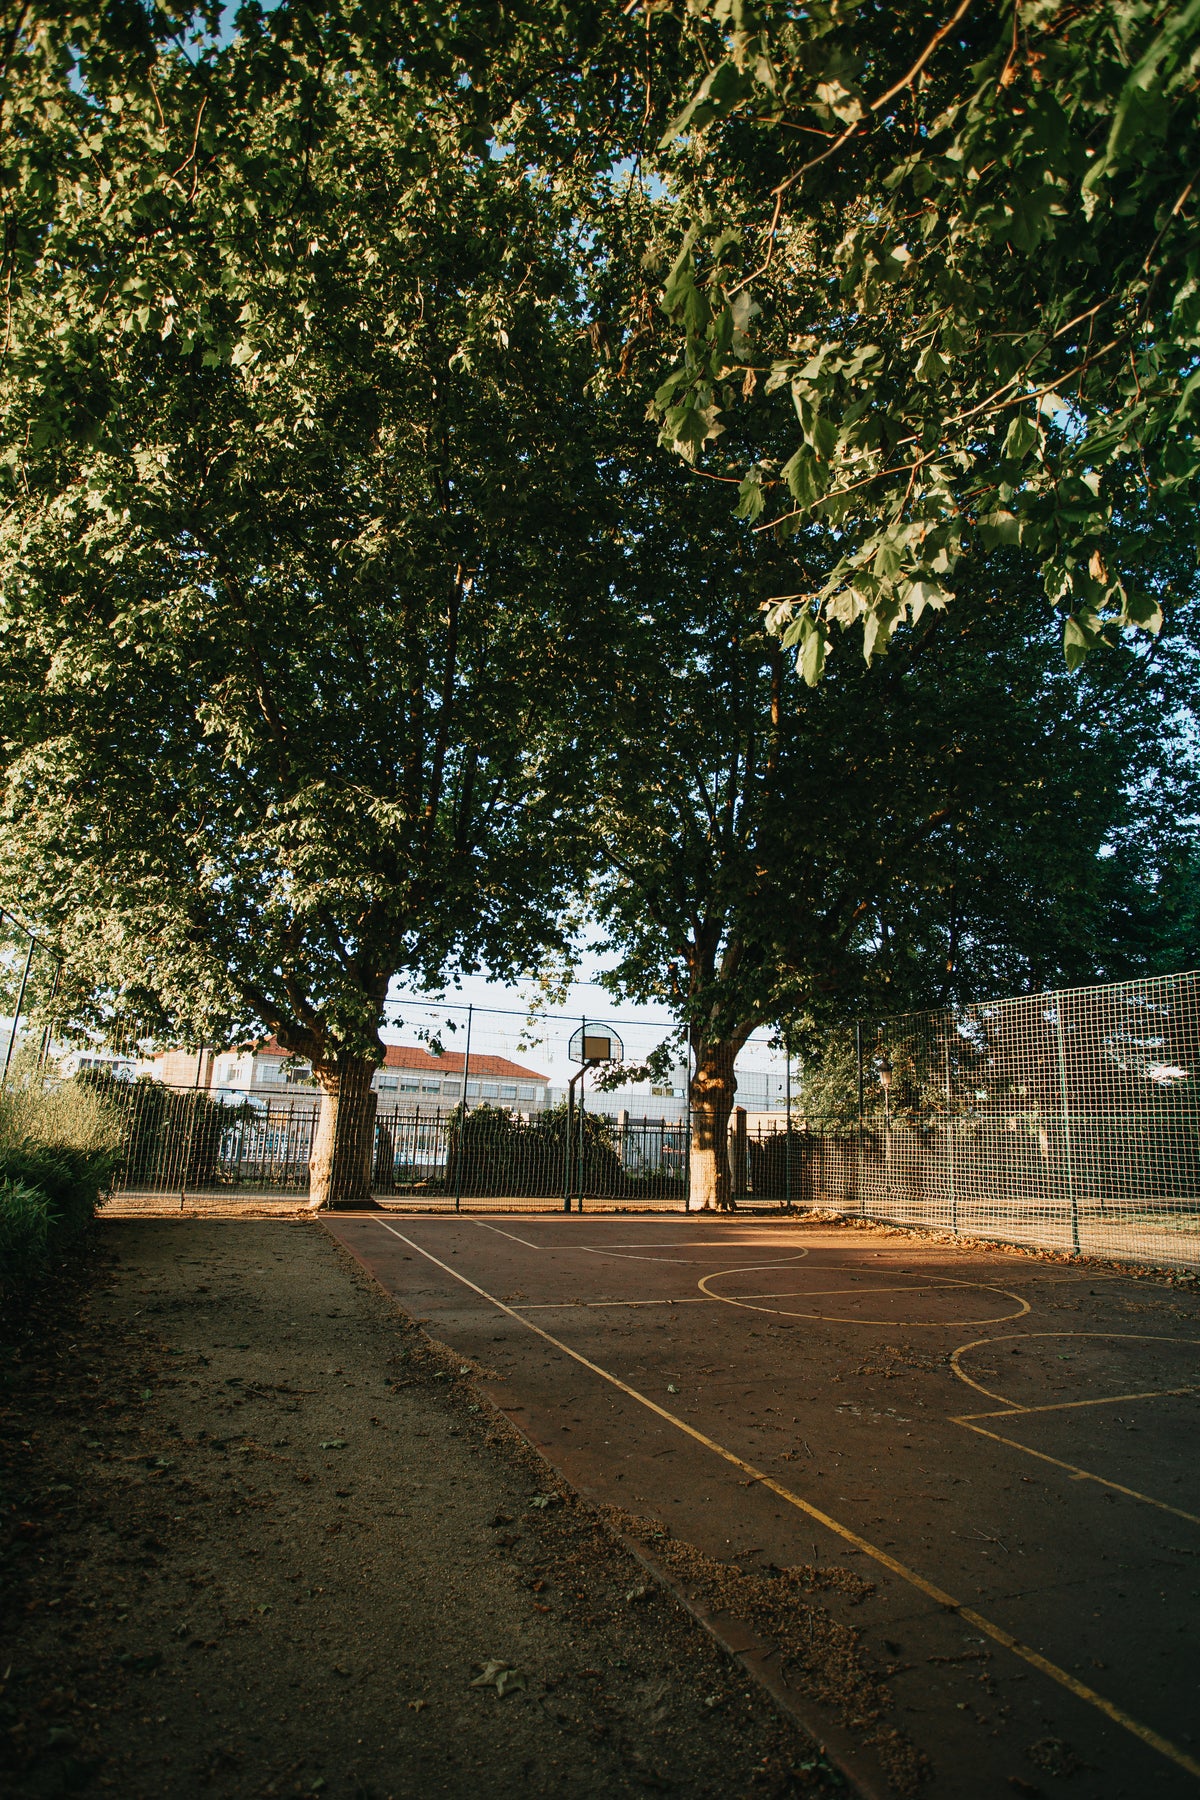 A Basketball Court Outdoors